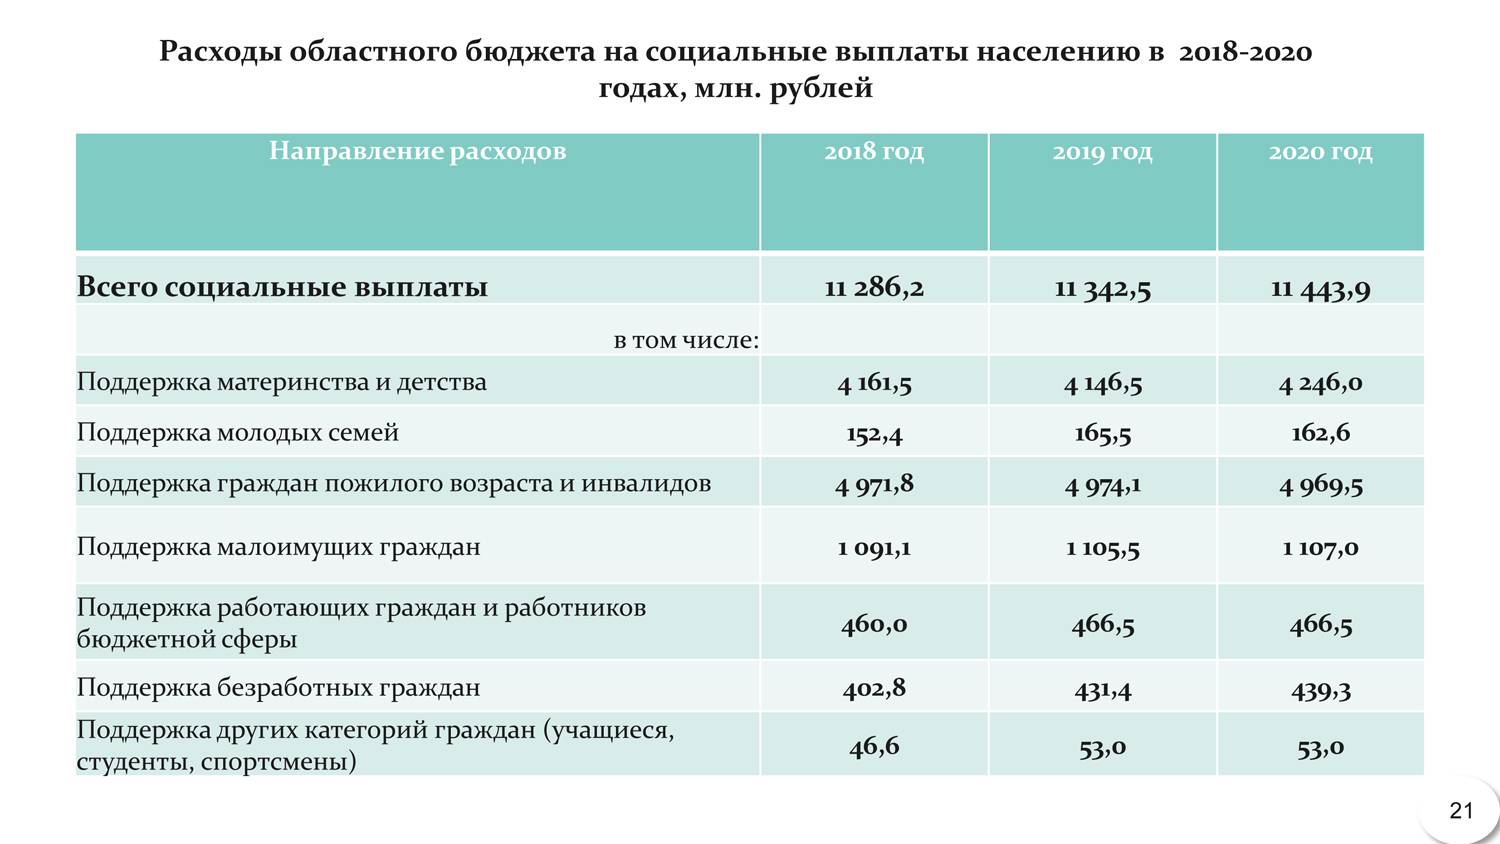 Правила назначения пособий для малоимущих изменятся в 2022 году 19.11.2021 | банки.ру